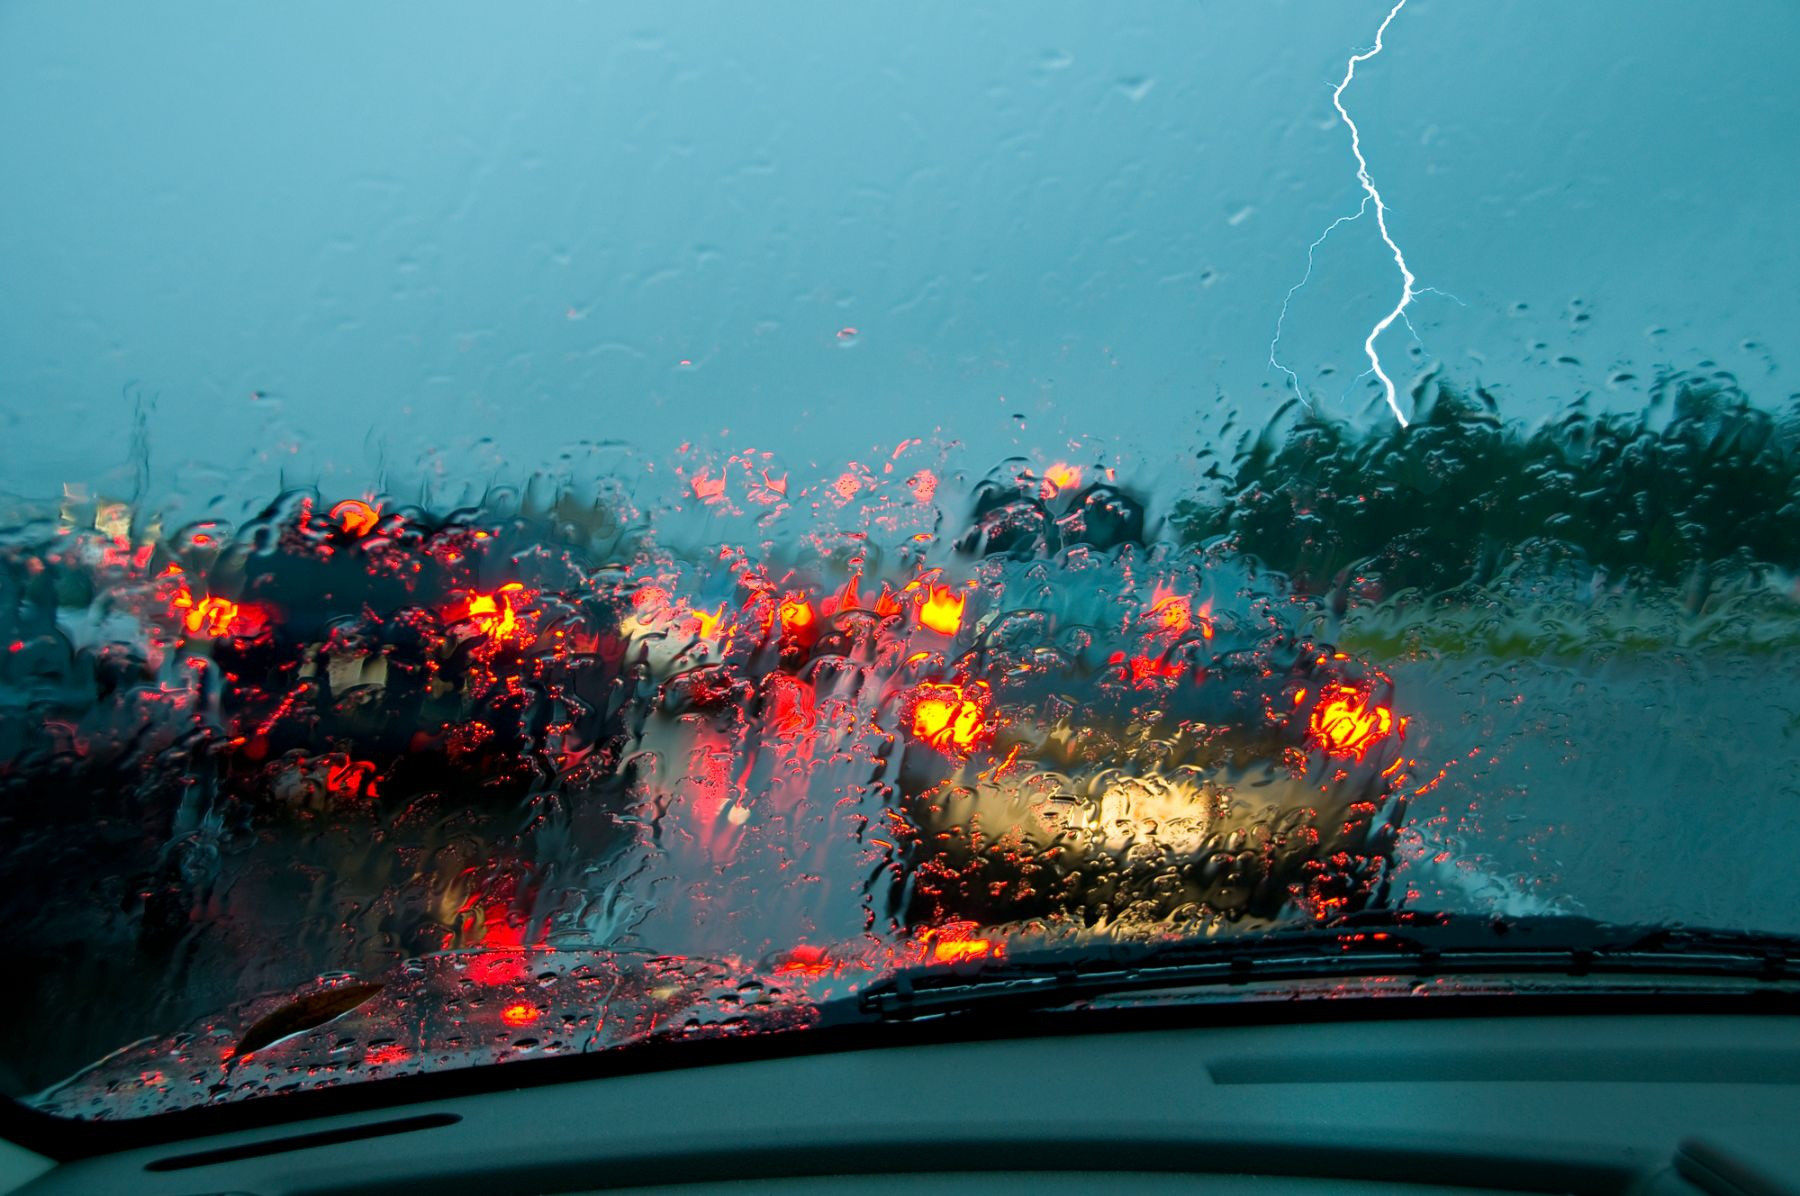 Thông qua bài kiểm tra độ nhạy tương phản trên, tài xế sẽ biết mình có thể lái xe dưới trời mưa hay cần phải gặp bác sĩ kiểm tra chính xác không - Ảnh: Driver Ed Safety